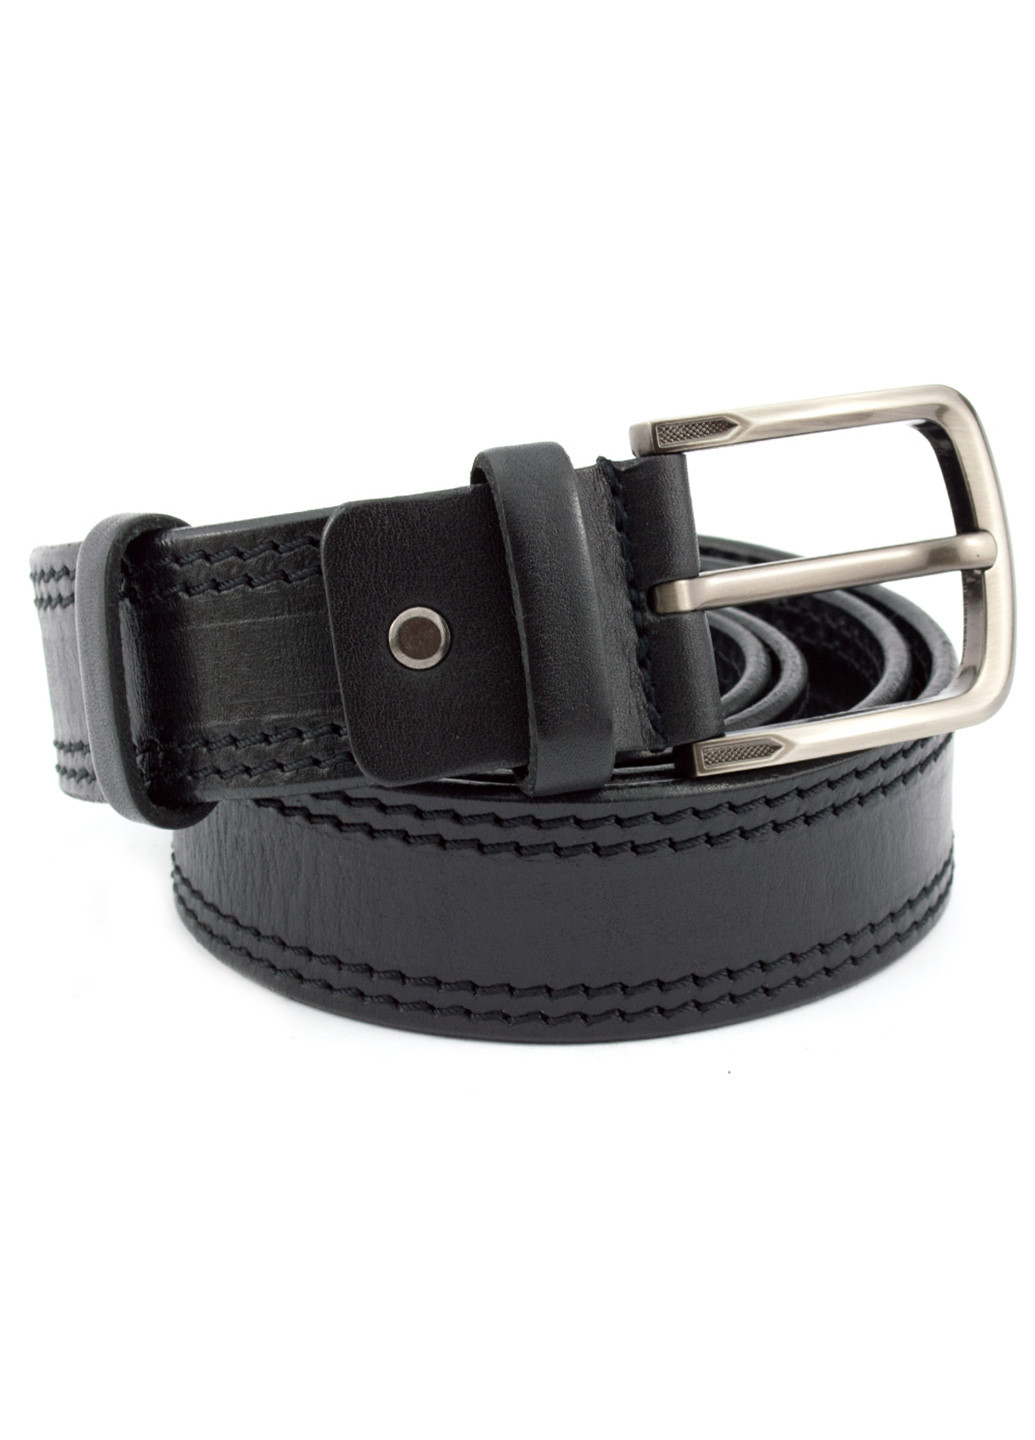 Ремень мужской кожаный под джинсы черный KB-40-02 (120 см) King's Belt (204850354)